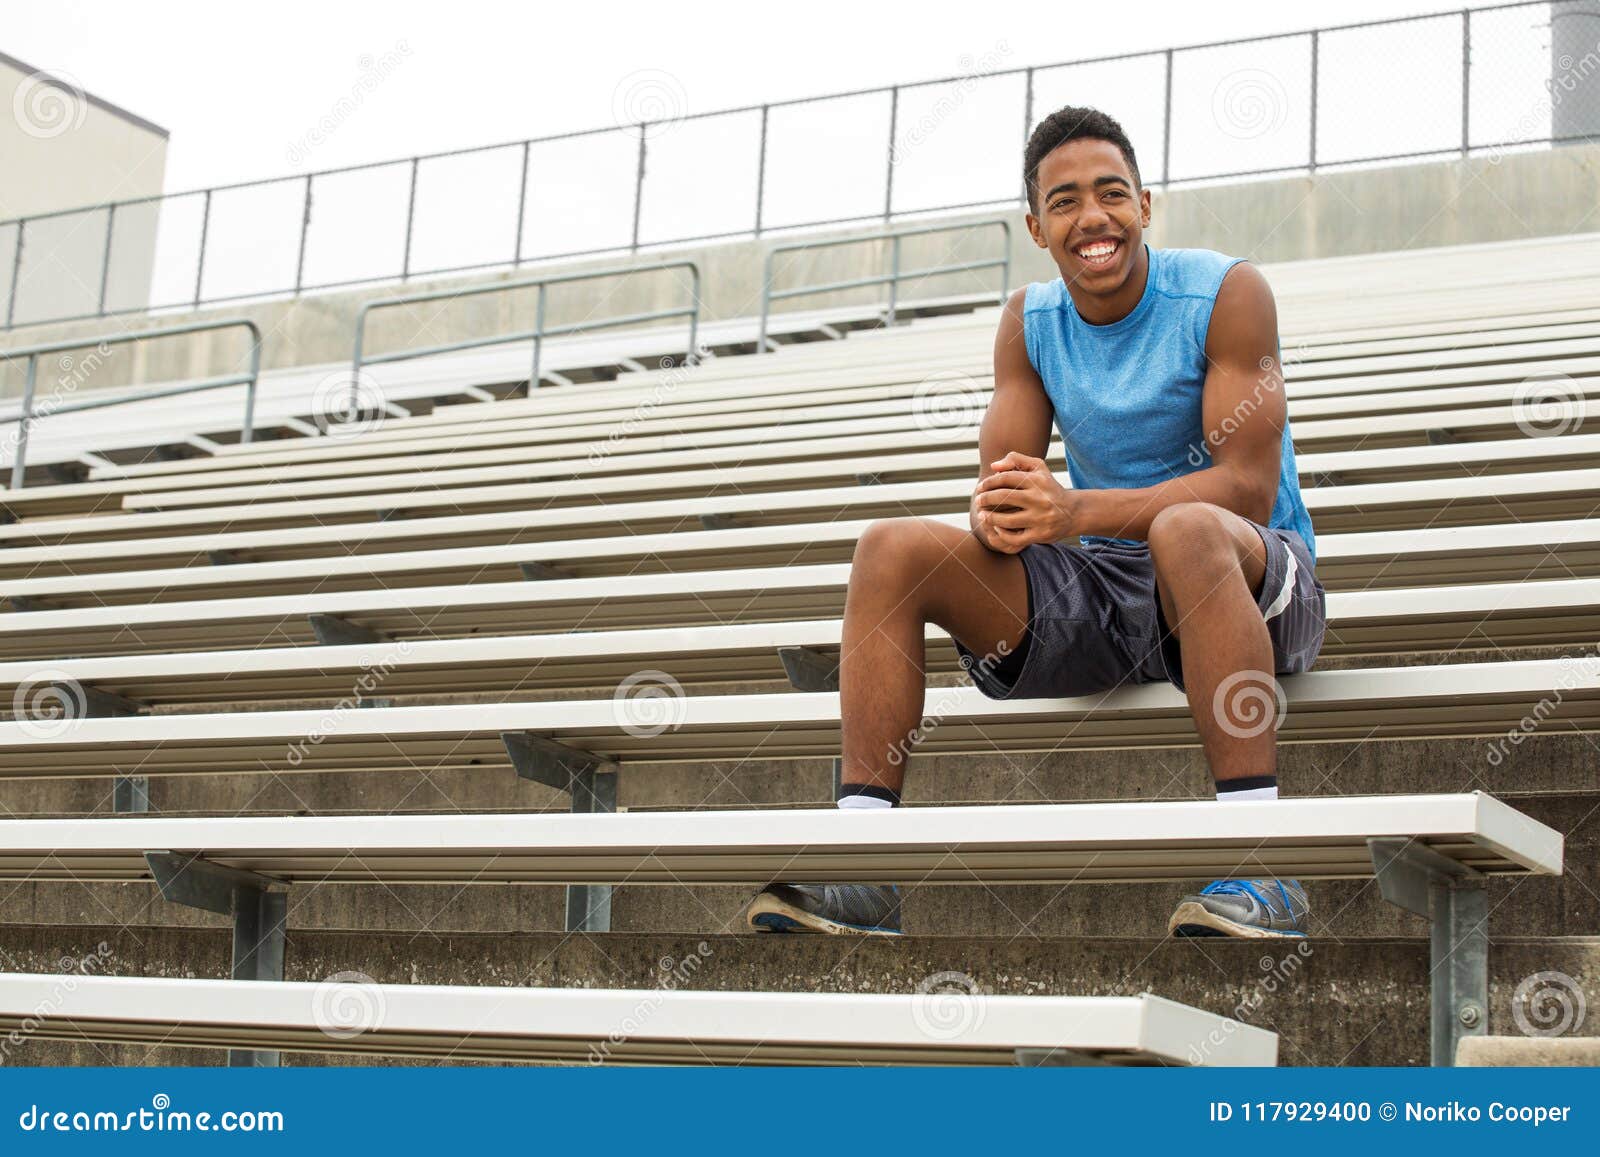 teenage athlete sitting on the bleachers.